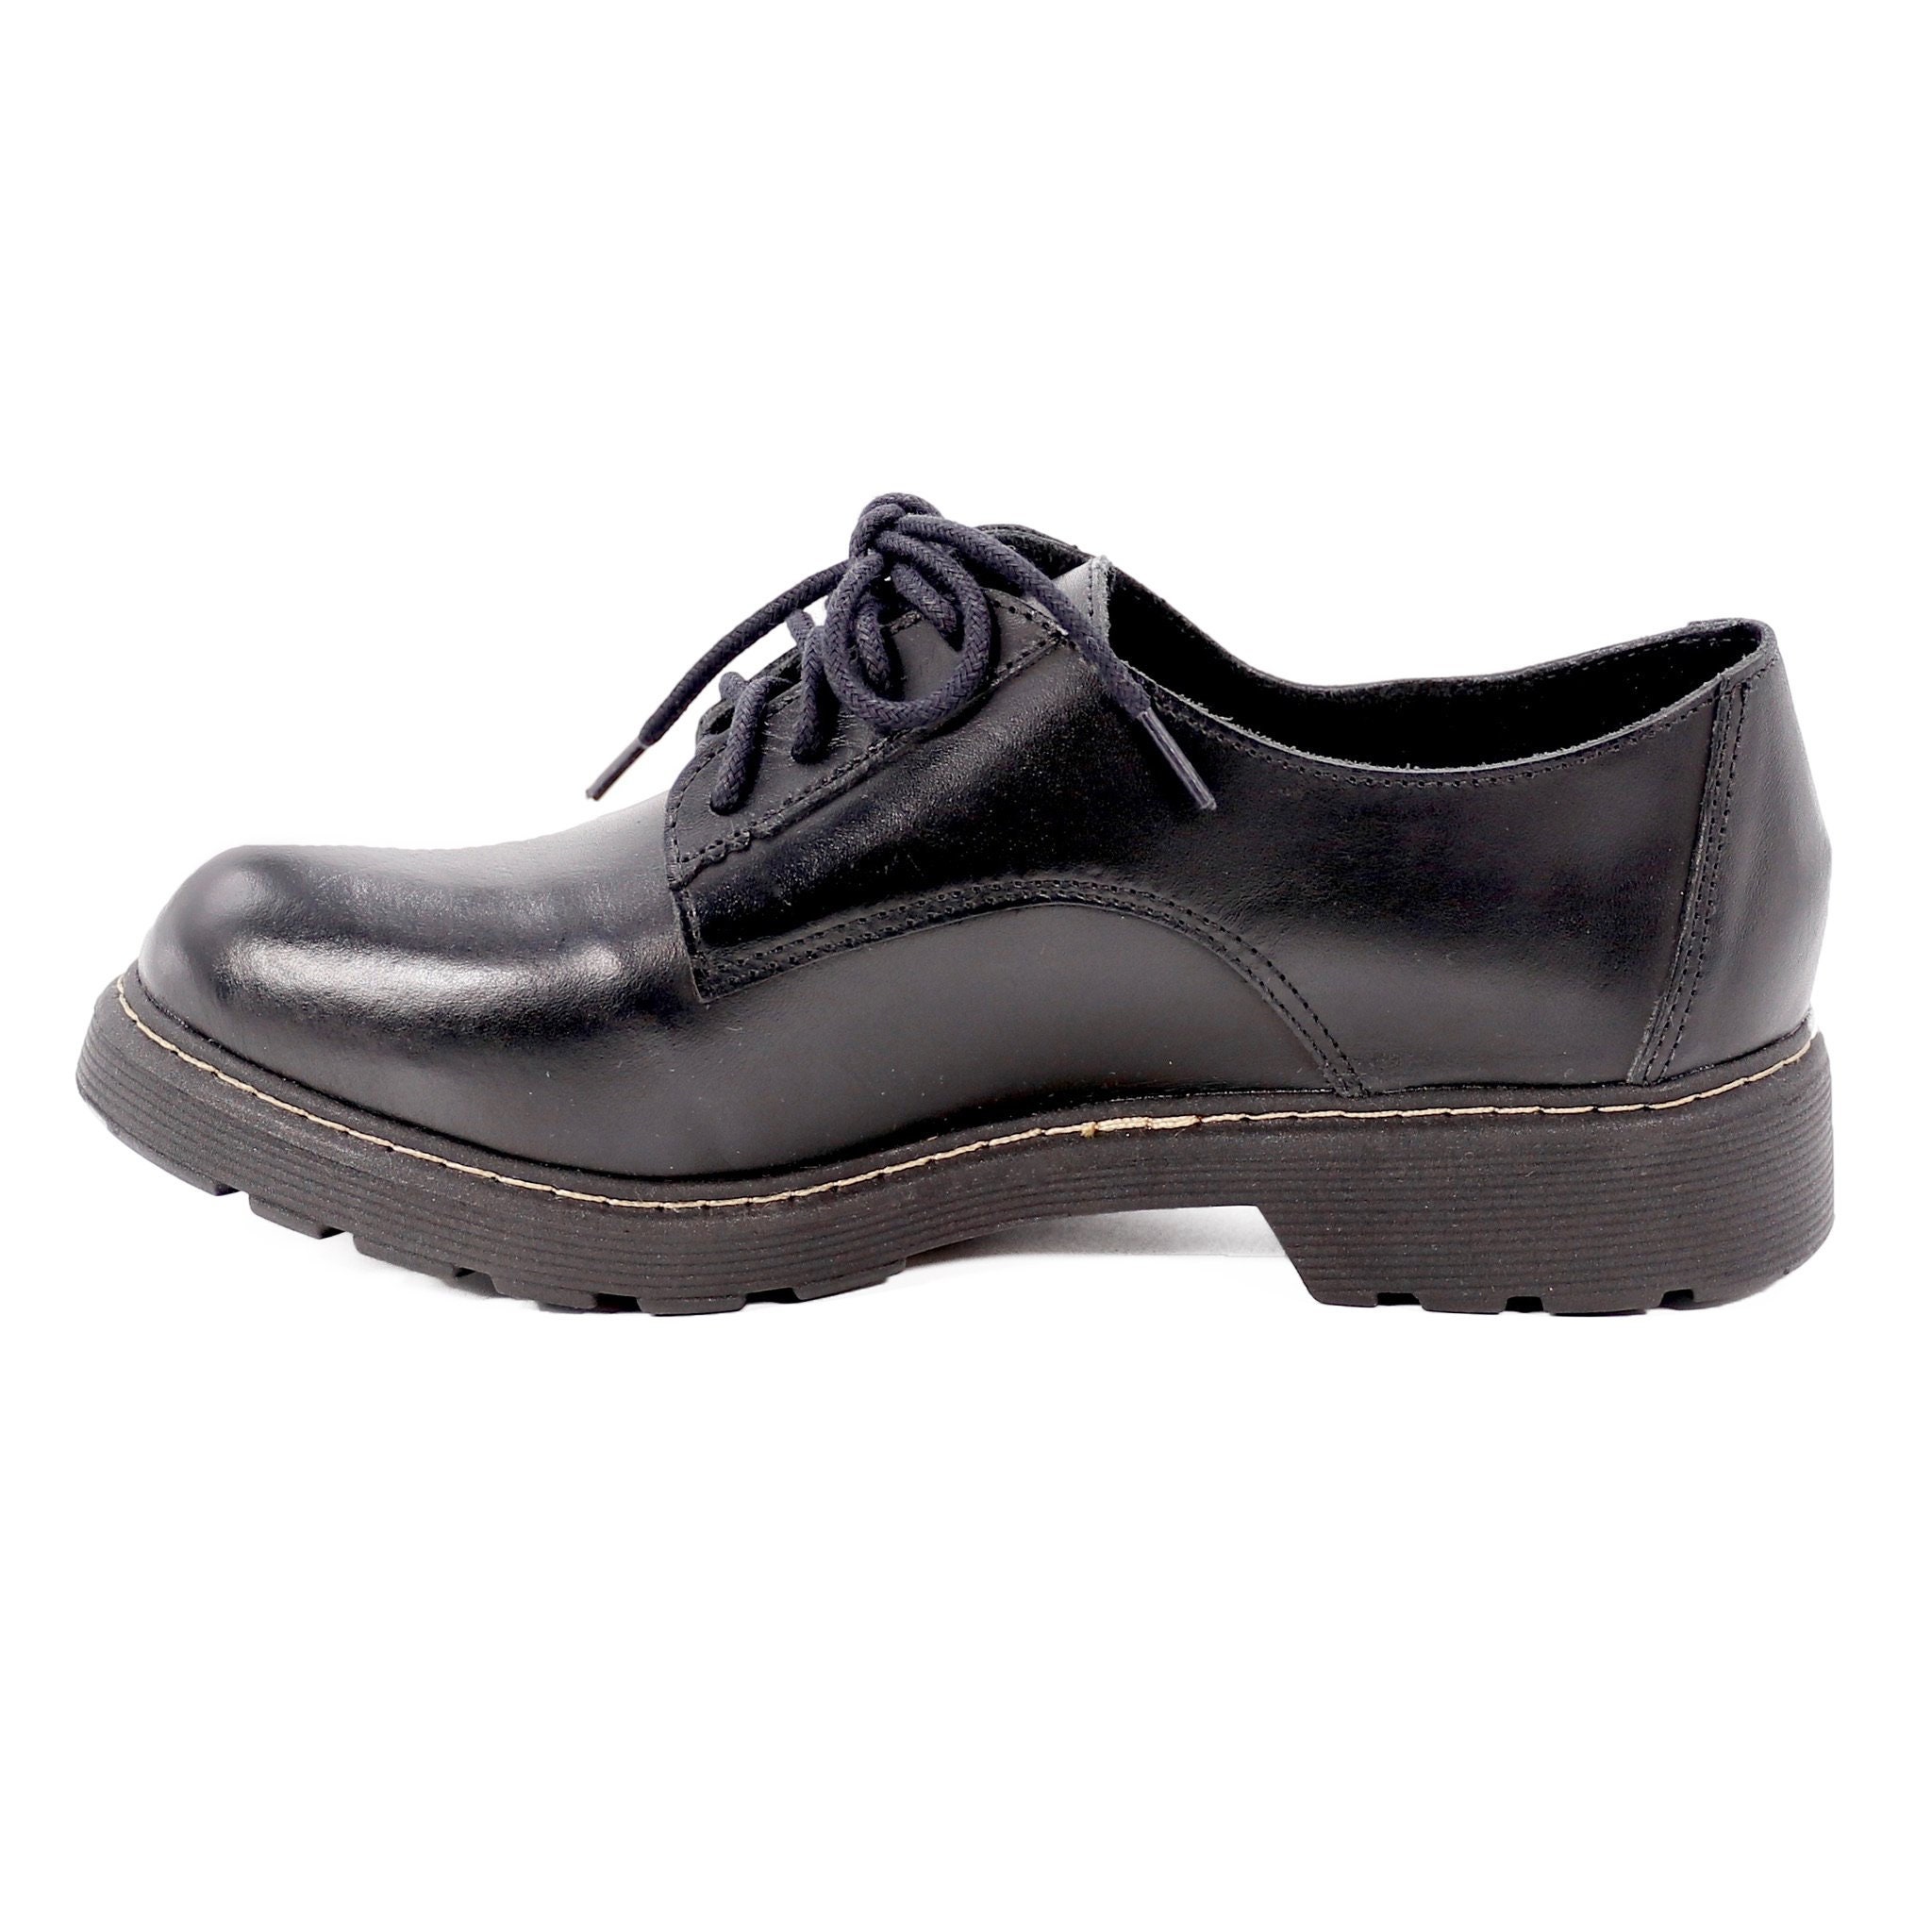 Delia Leather Shoes Women Black Shoes Women Comfortable - Etsy